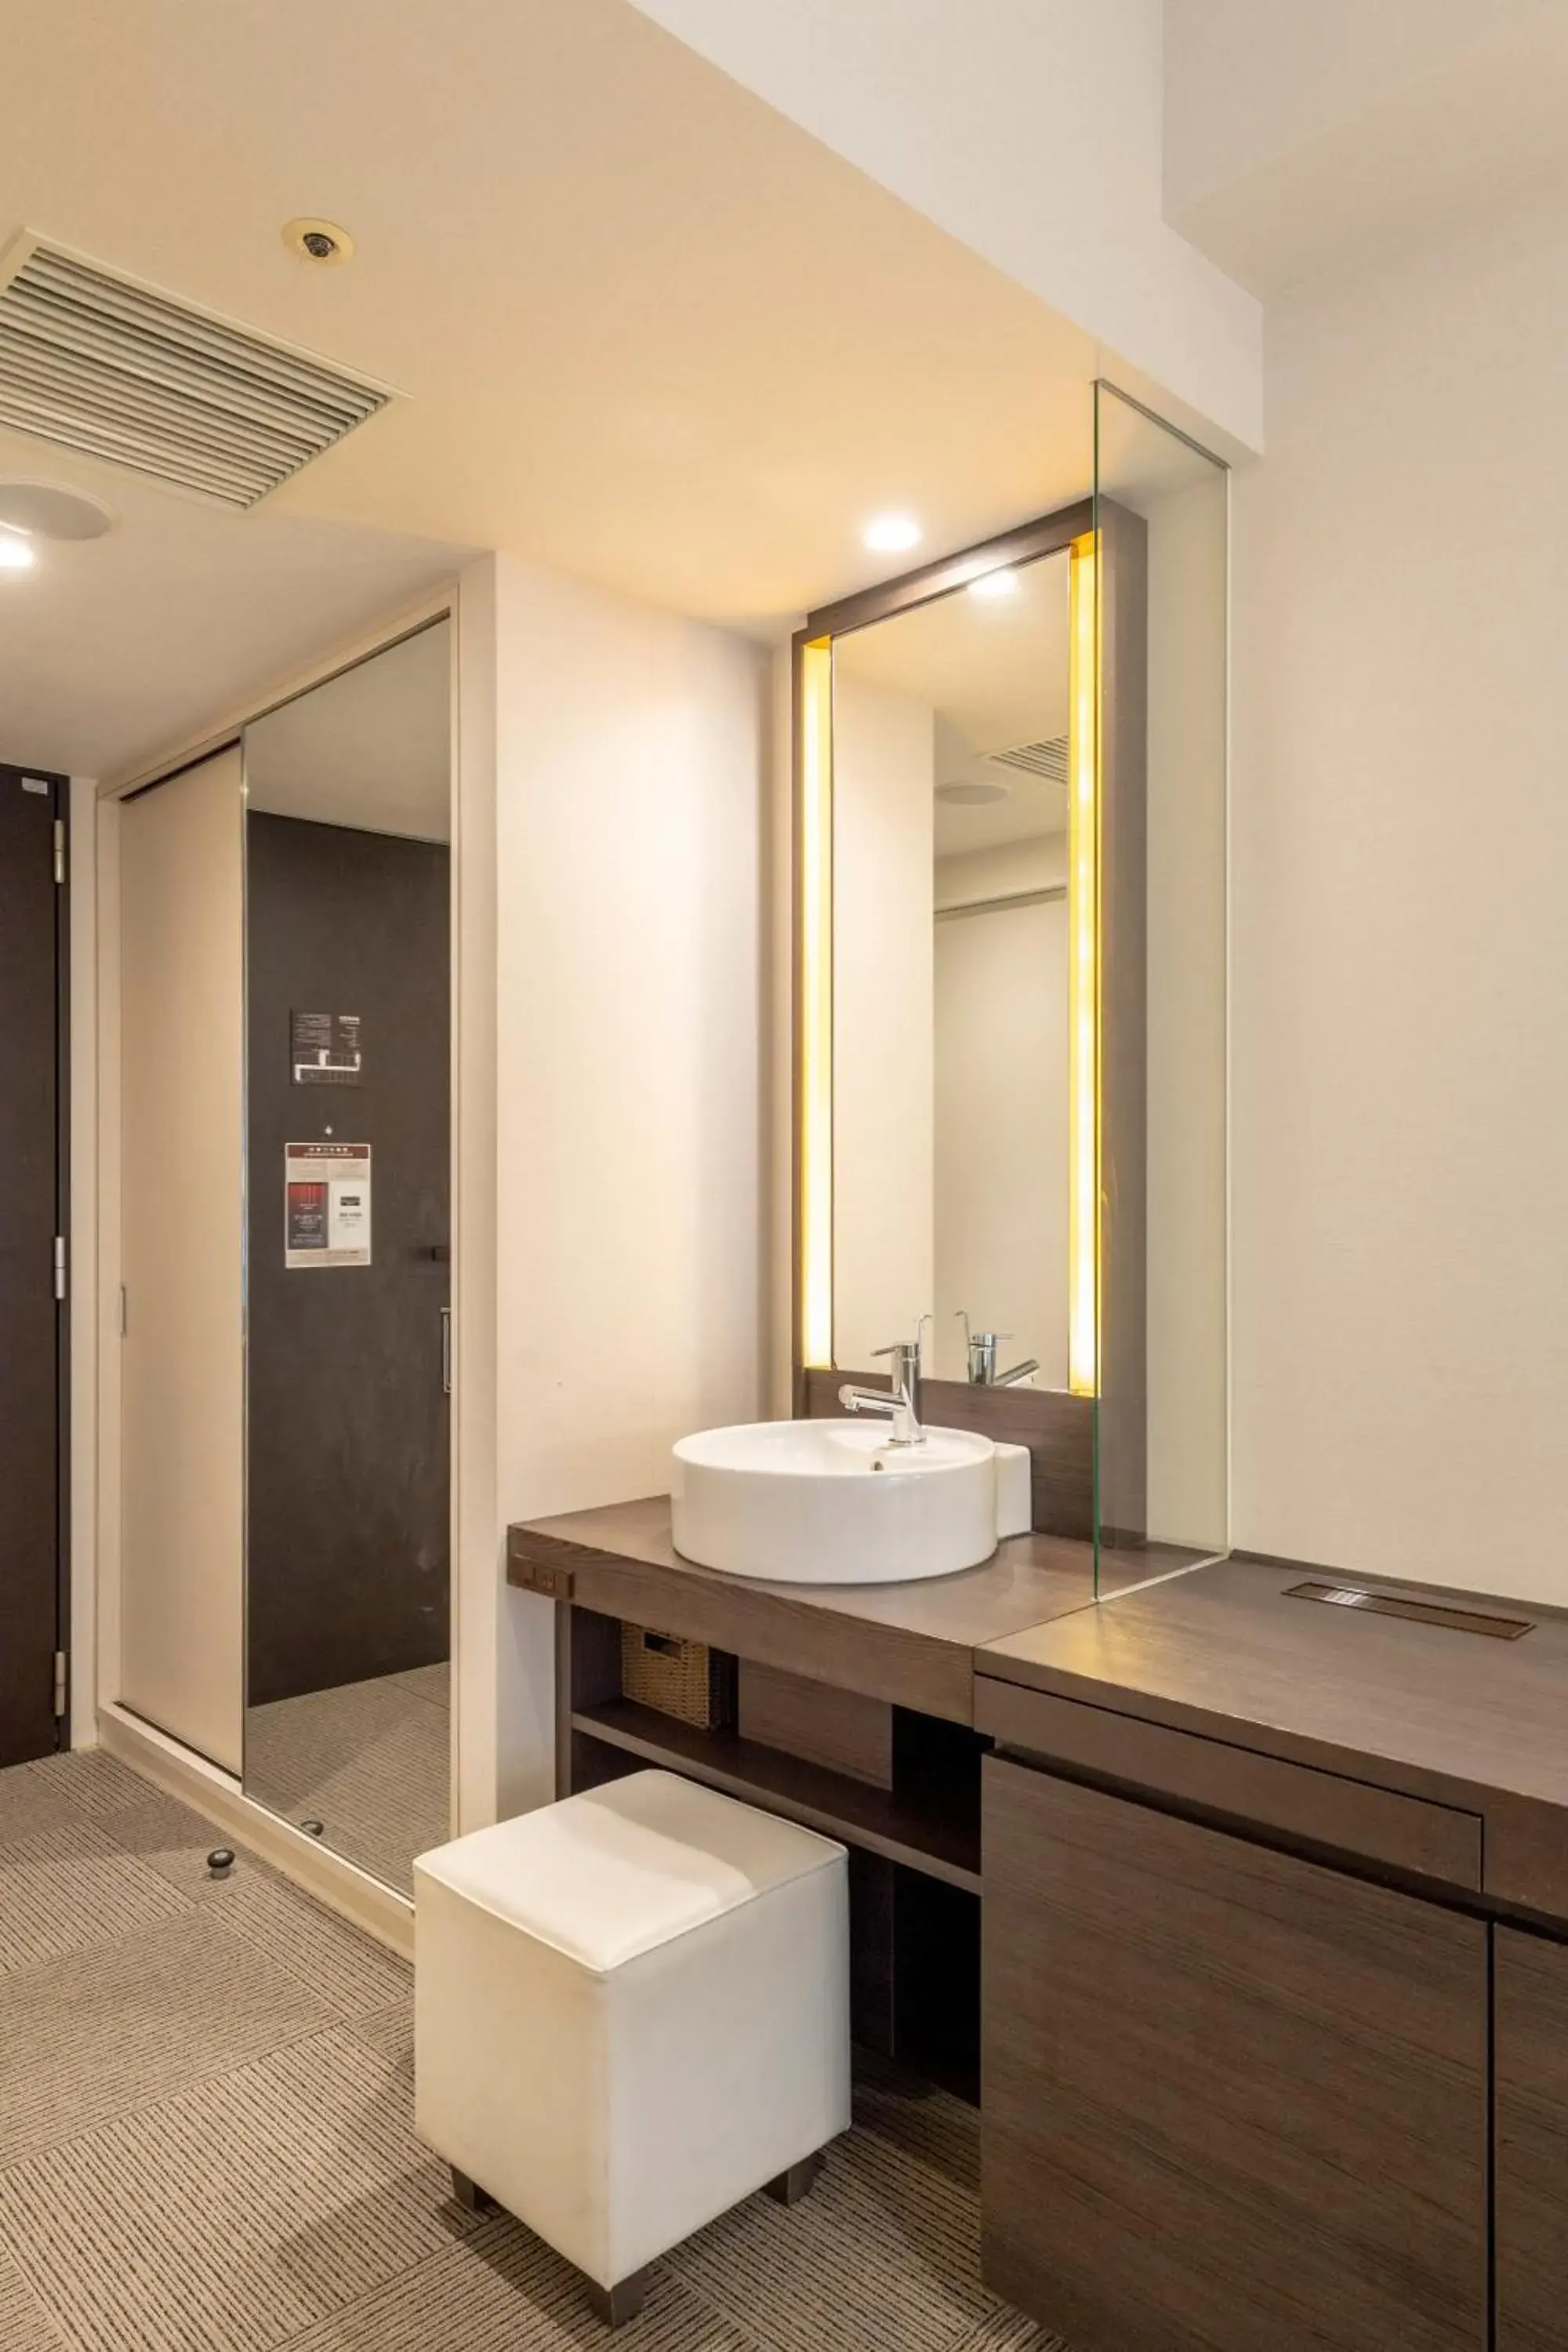 Photo of the whole room, Bathroom in Hotel Keihan Tokyo Yotsuya